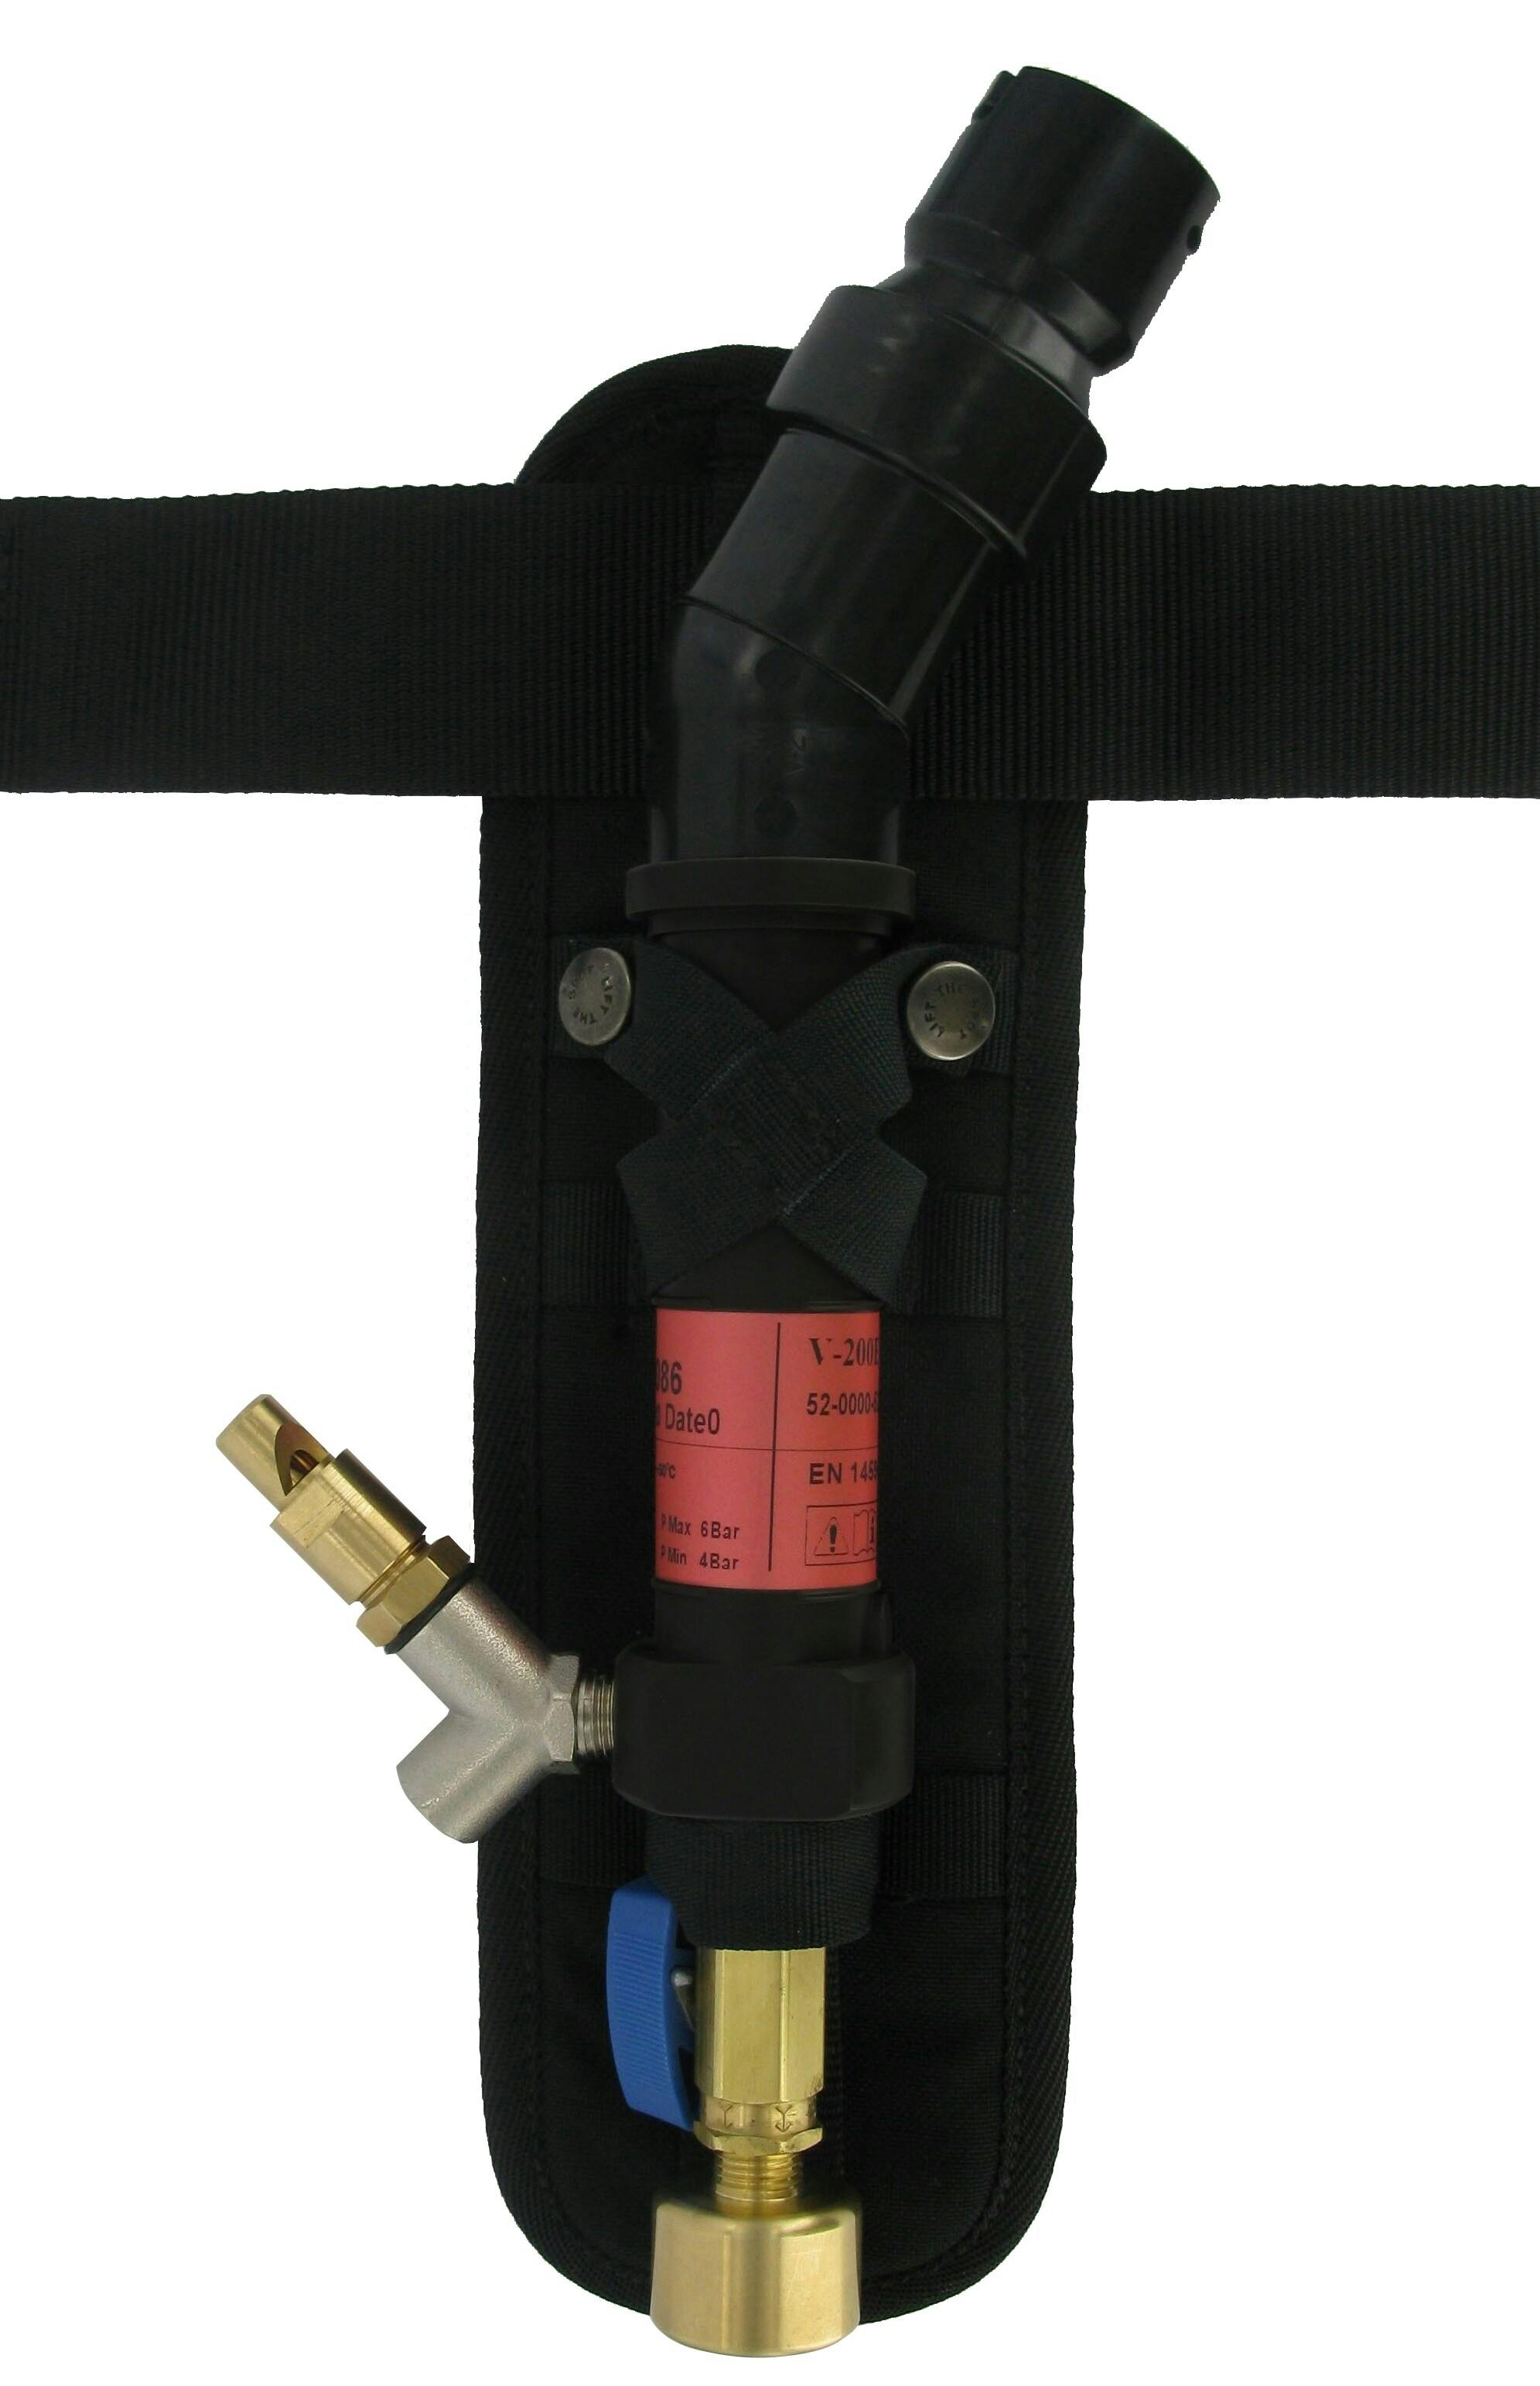 3M™ Heating Vortex Kit, V-200